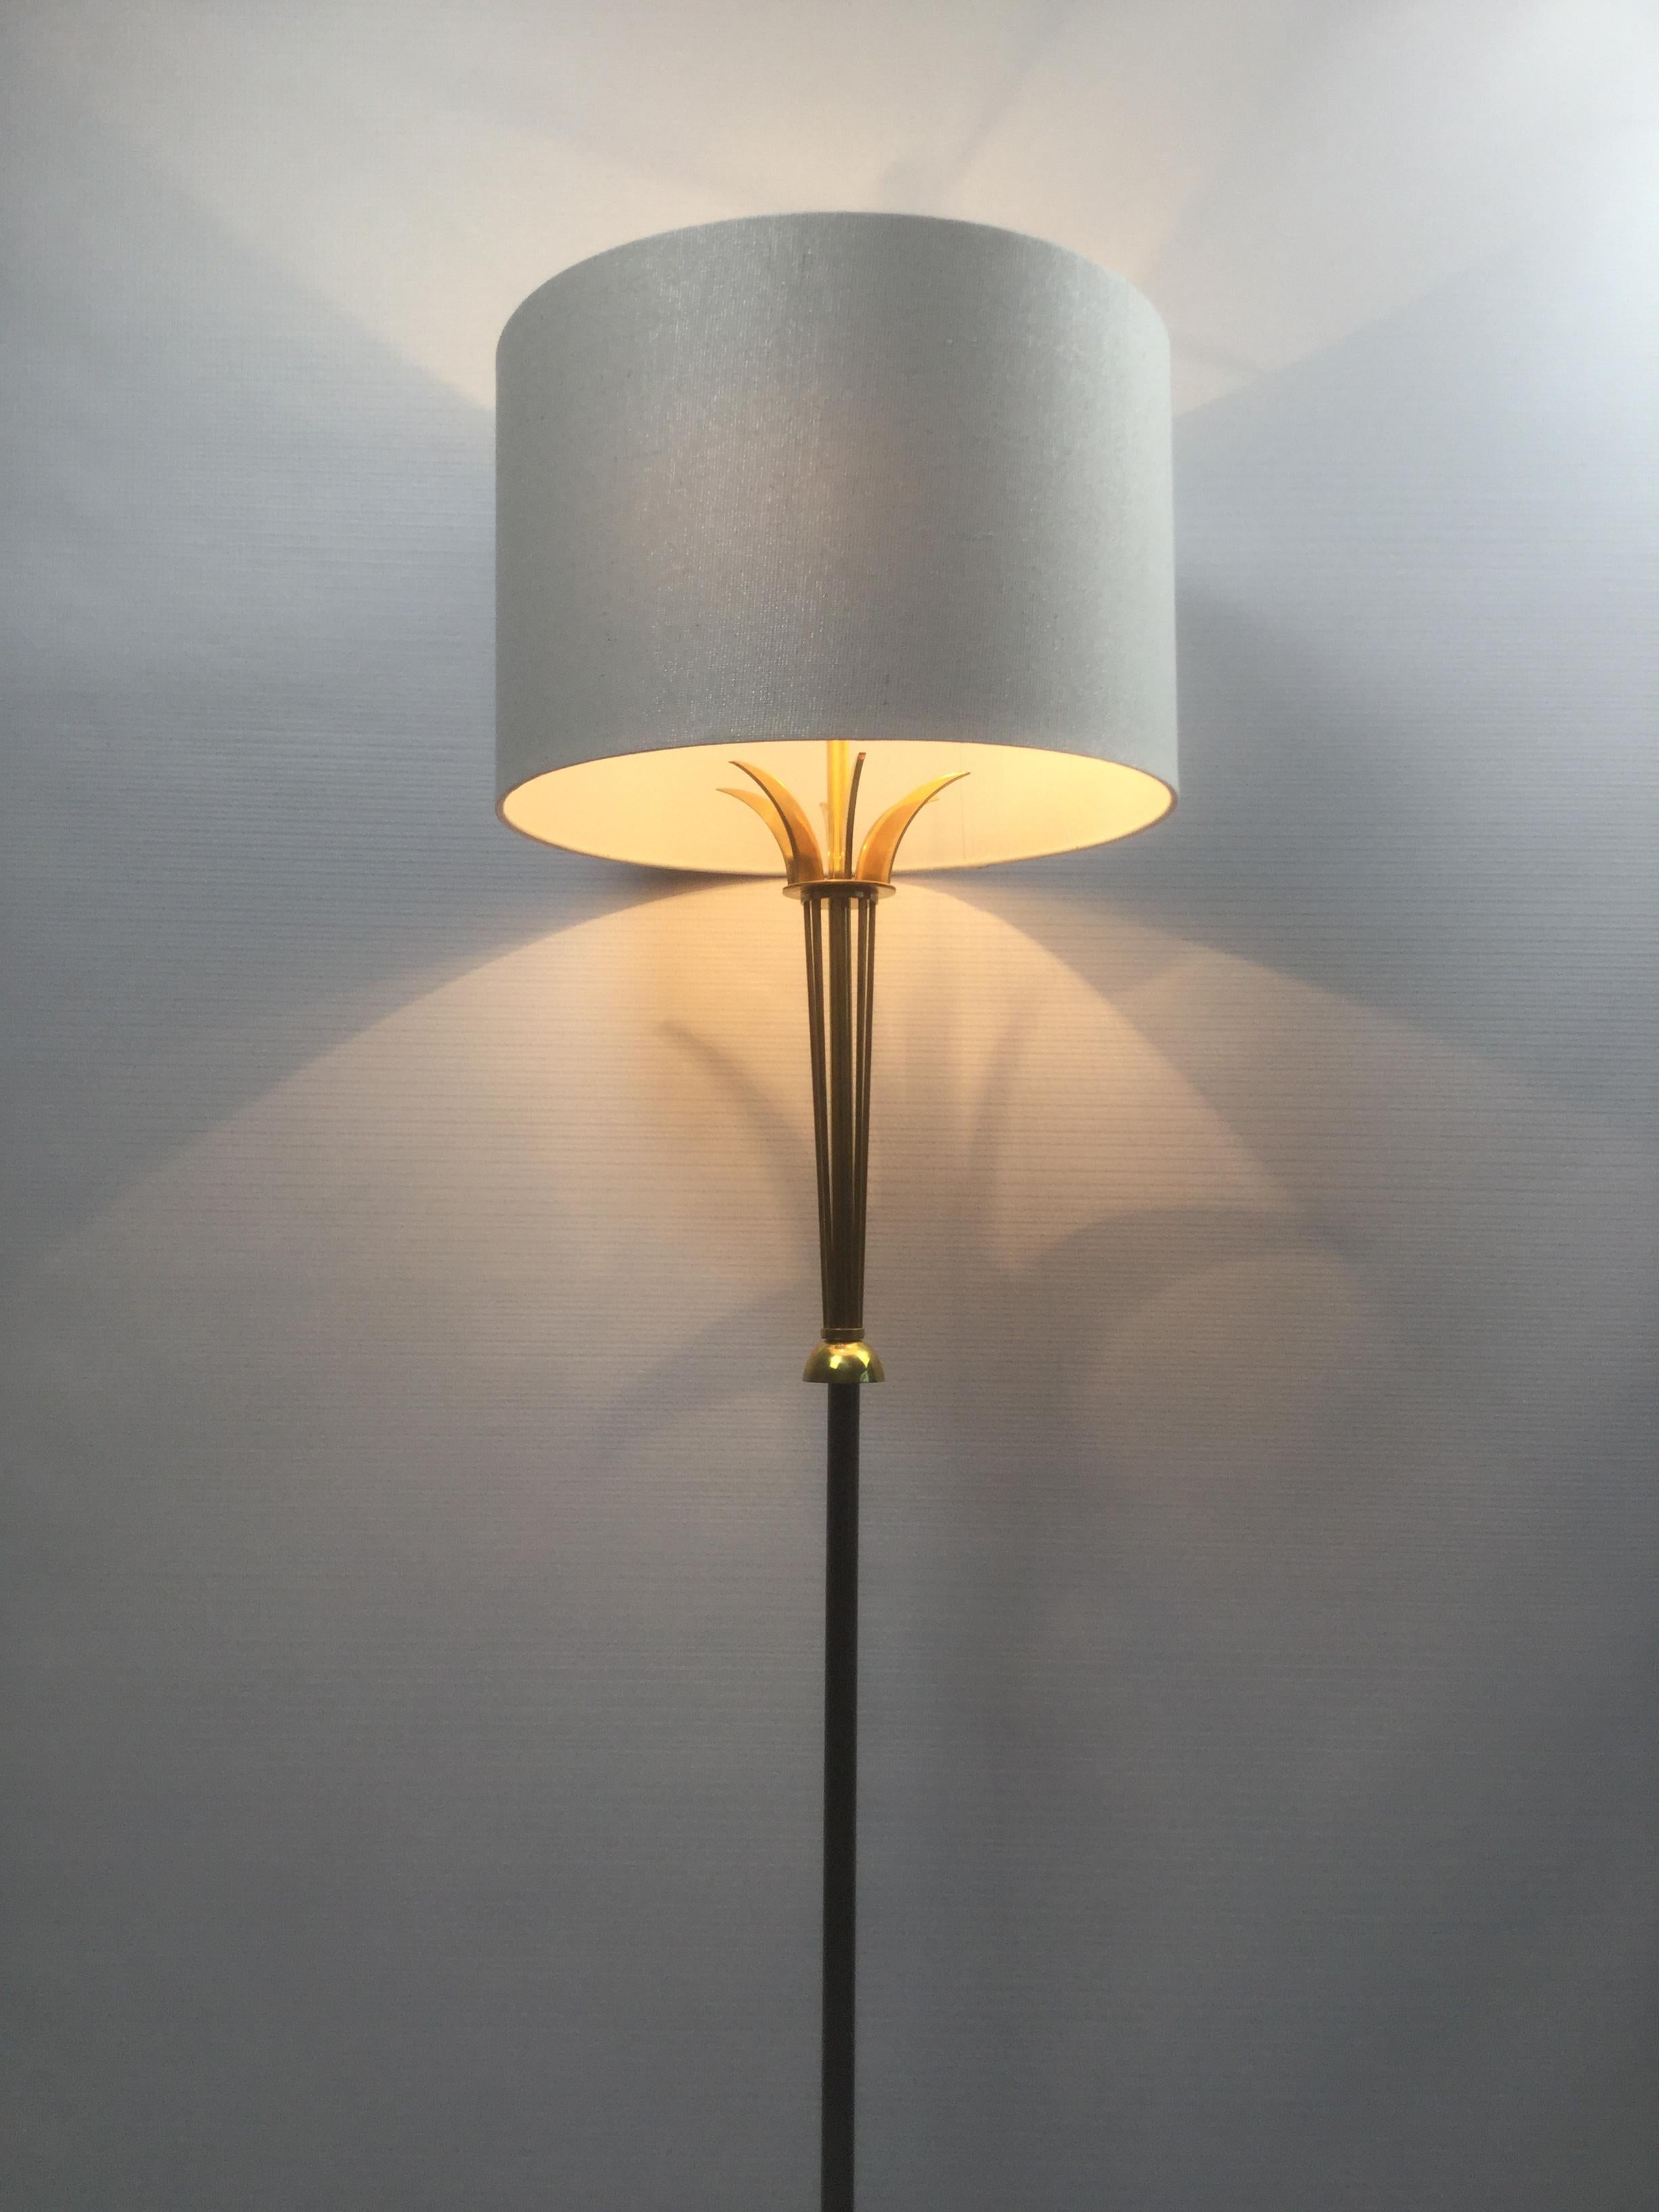 French Brass Floor Lamp Attributed to Maison Jansen, 1950s (Mitte des 20. Jahrhunderts)